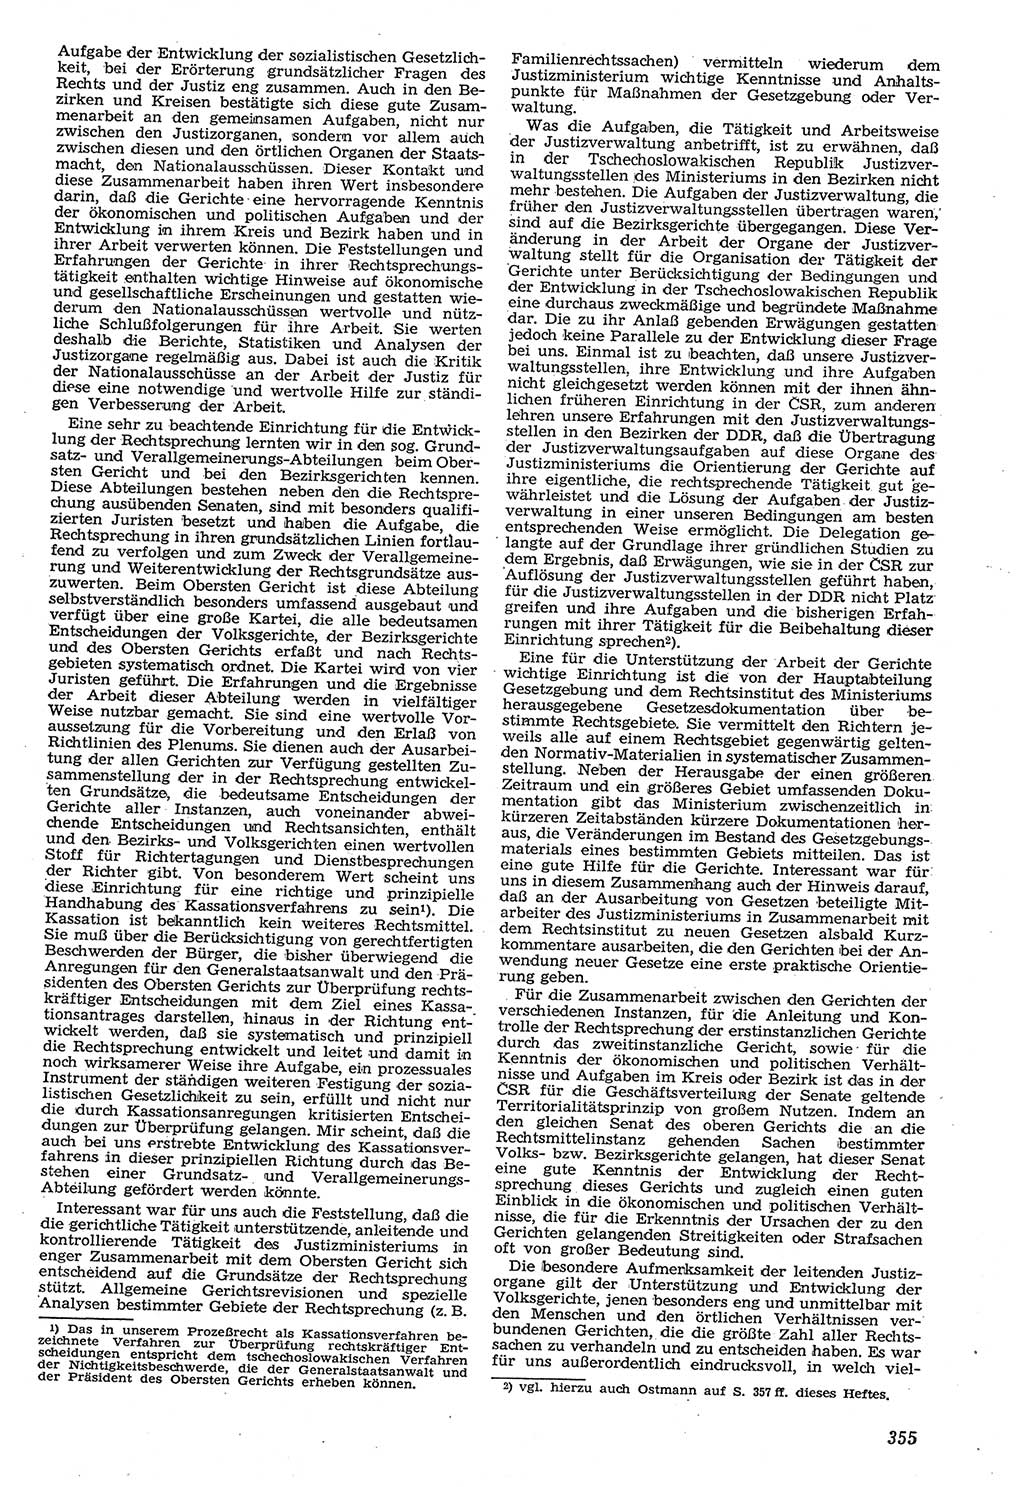 Neue Justiz (NJ), Zeitschrift für Recht und Rechtswissenschaft [Deutsche Demokratische Republik (DDR)], 11. Jahrgang 1957, Seite 355 (NJ DDR 1957, S. 355)